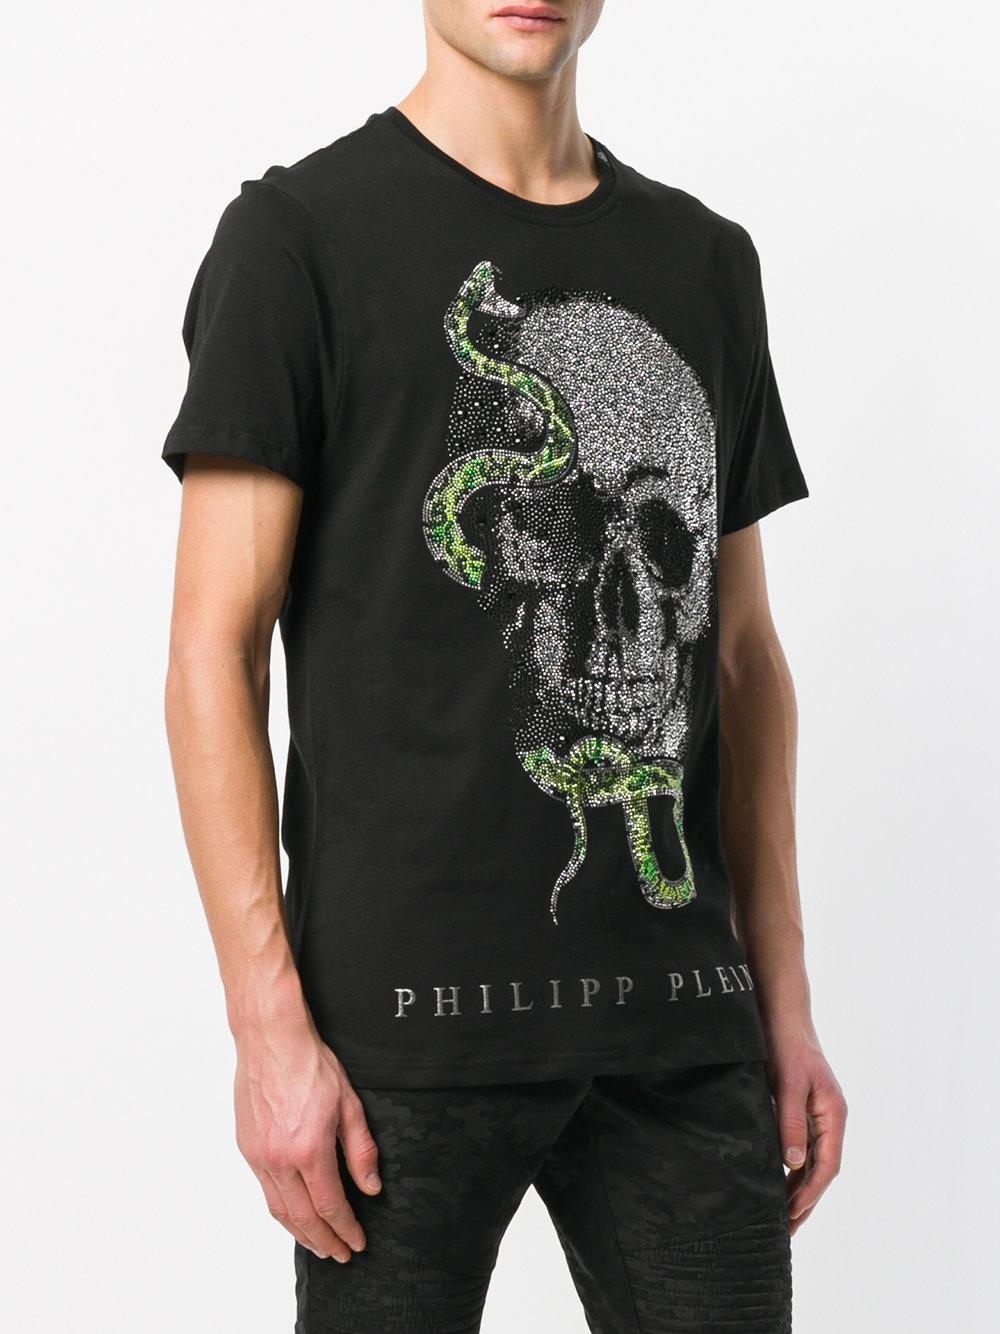 Philipp Plein Cotton Skull Snake Patch T-shirt in Black for Men - Lyst